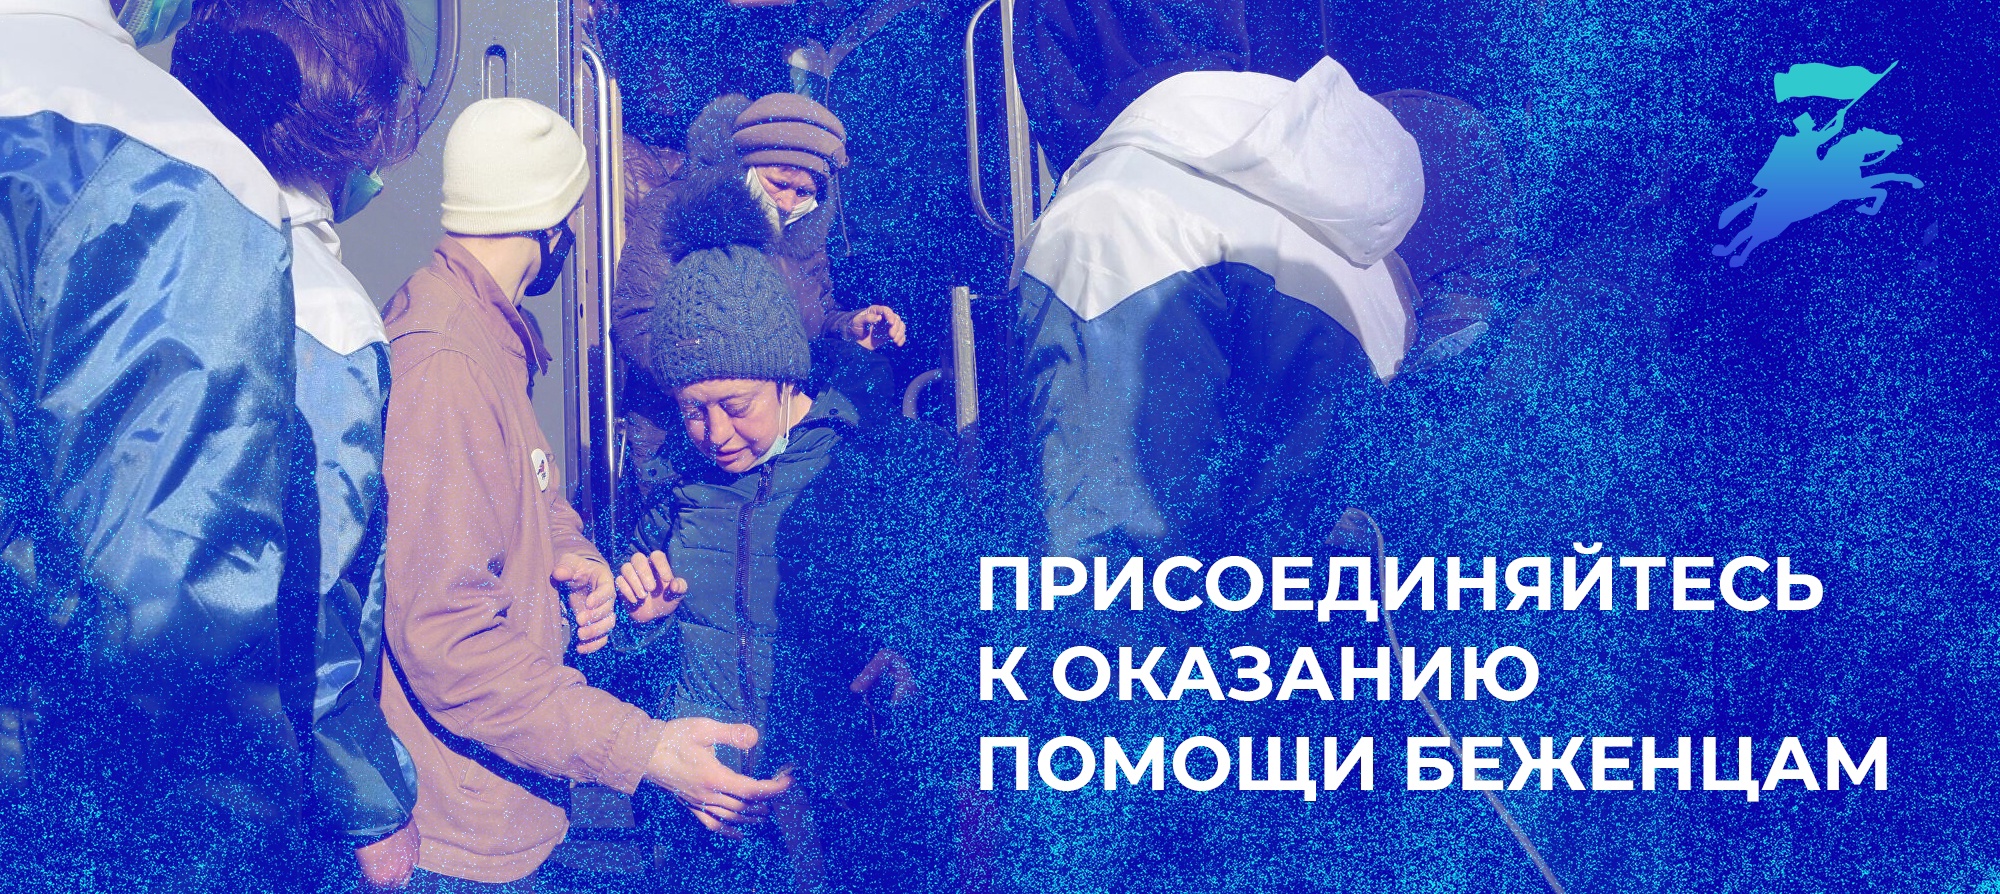 Комментарий: Оренбургское казачье войско готово к оказанию помощи беженцам с территории Донбасса